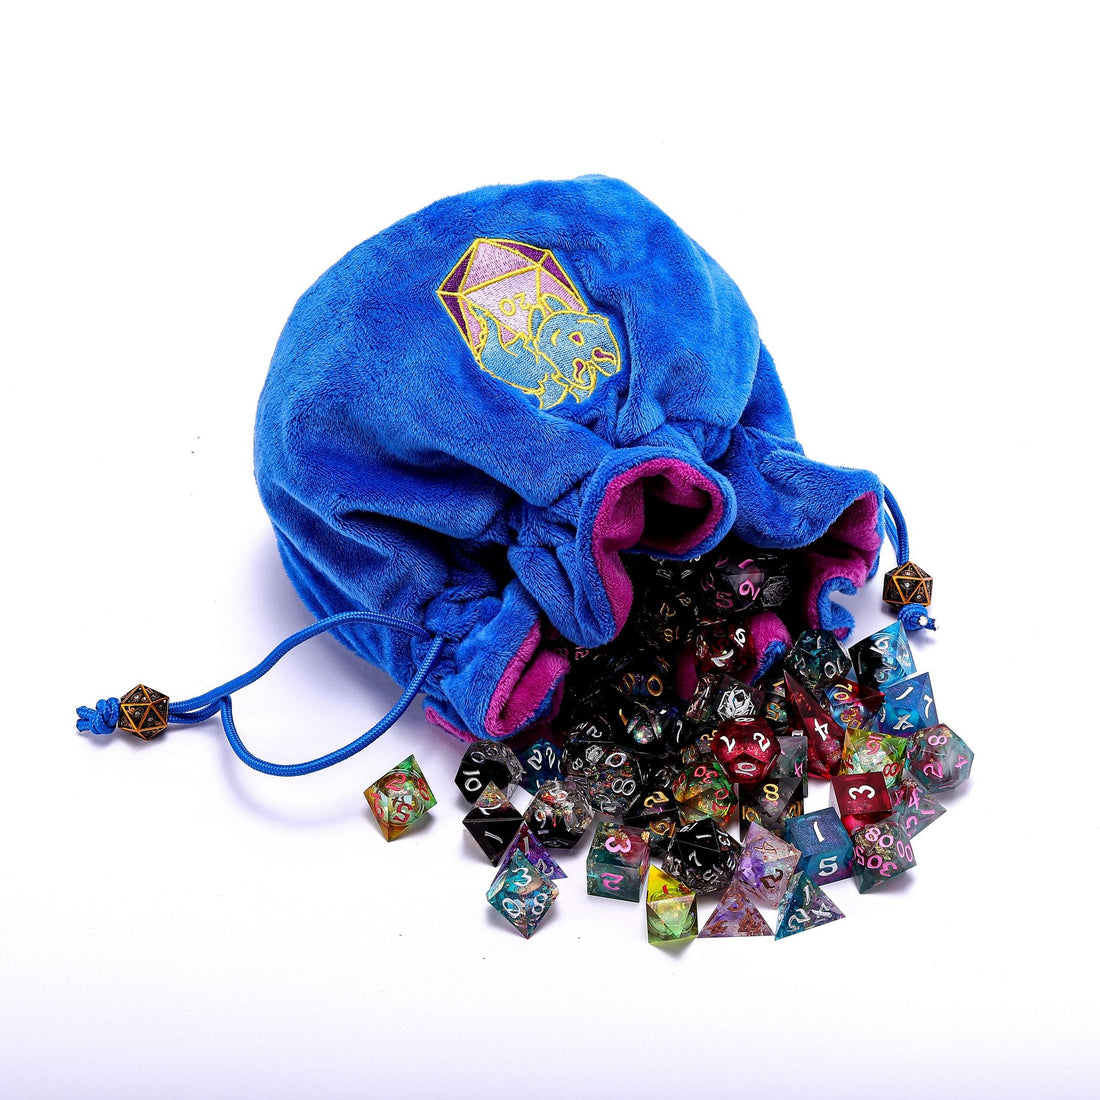 HymGho Dice: Whimsy Wyrm's Treasure Trove Dice Bag